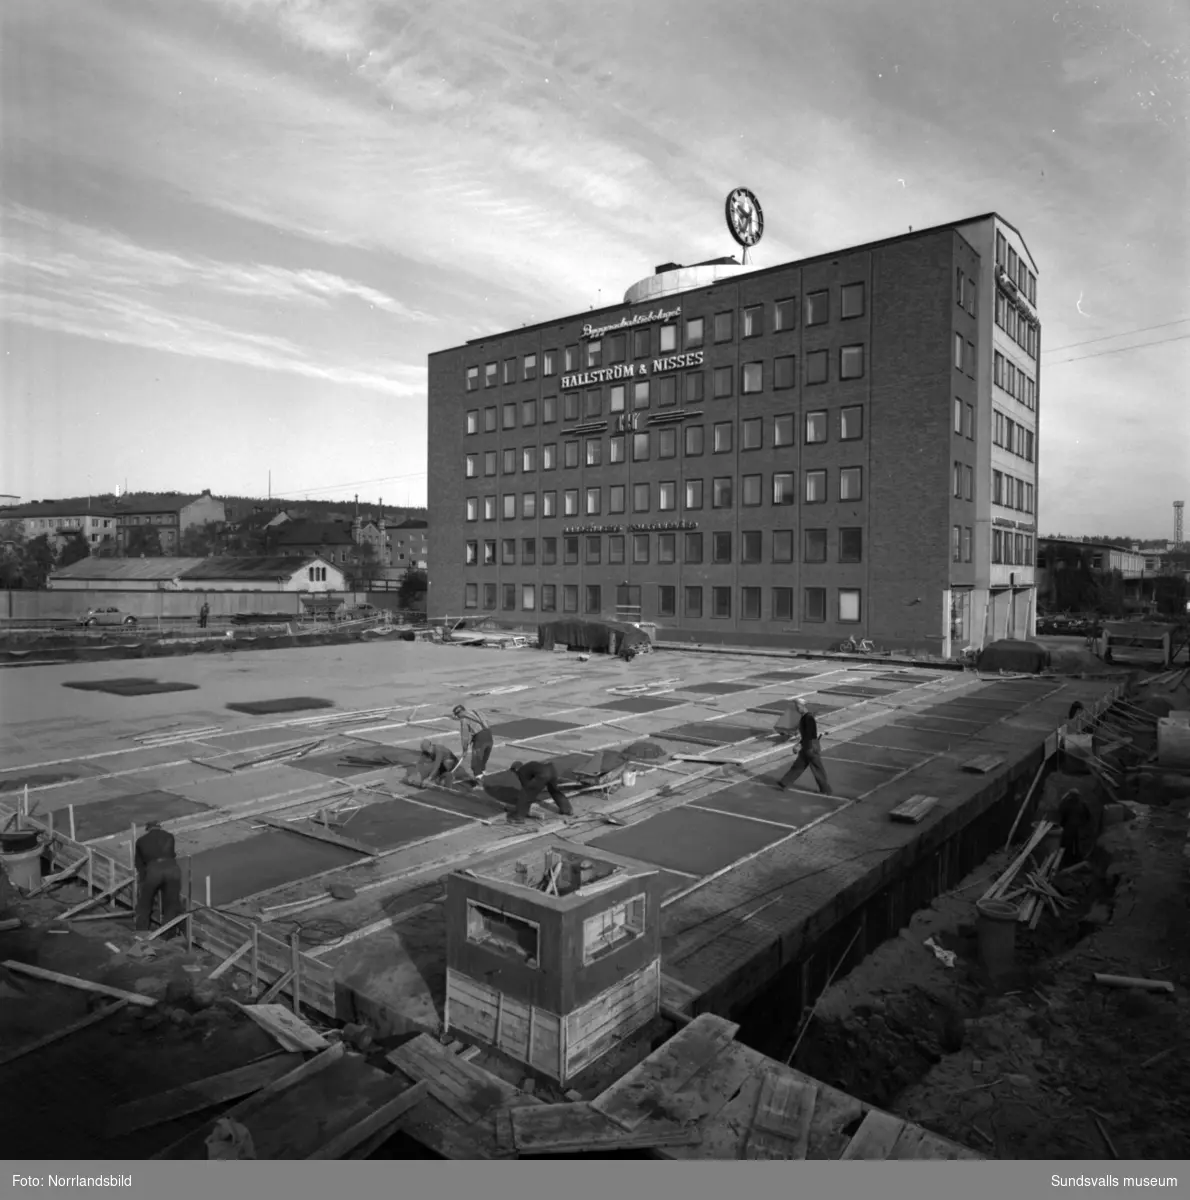 Hallström & Nisses bygger ut huvudkontoret vid Landsvägsallén i vinkel mot Parkgatan. Mark- och grävarbeten är i full gång.